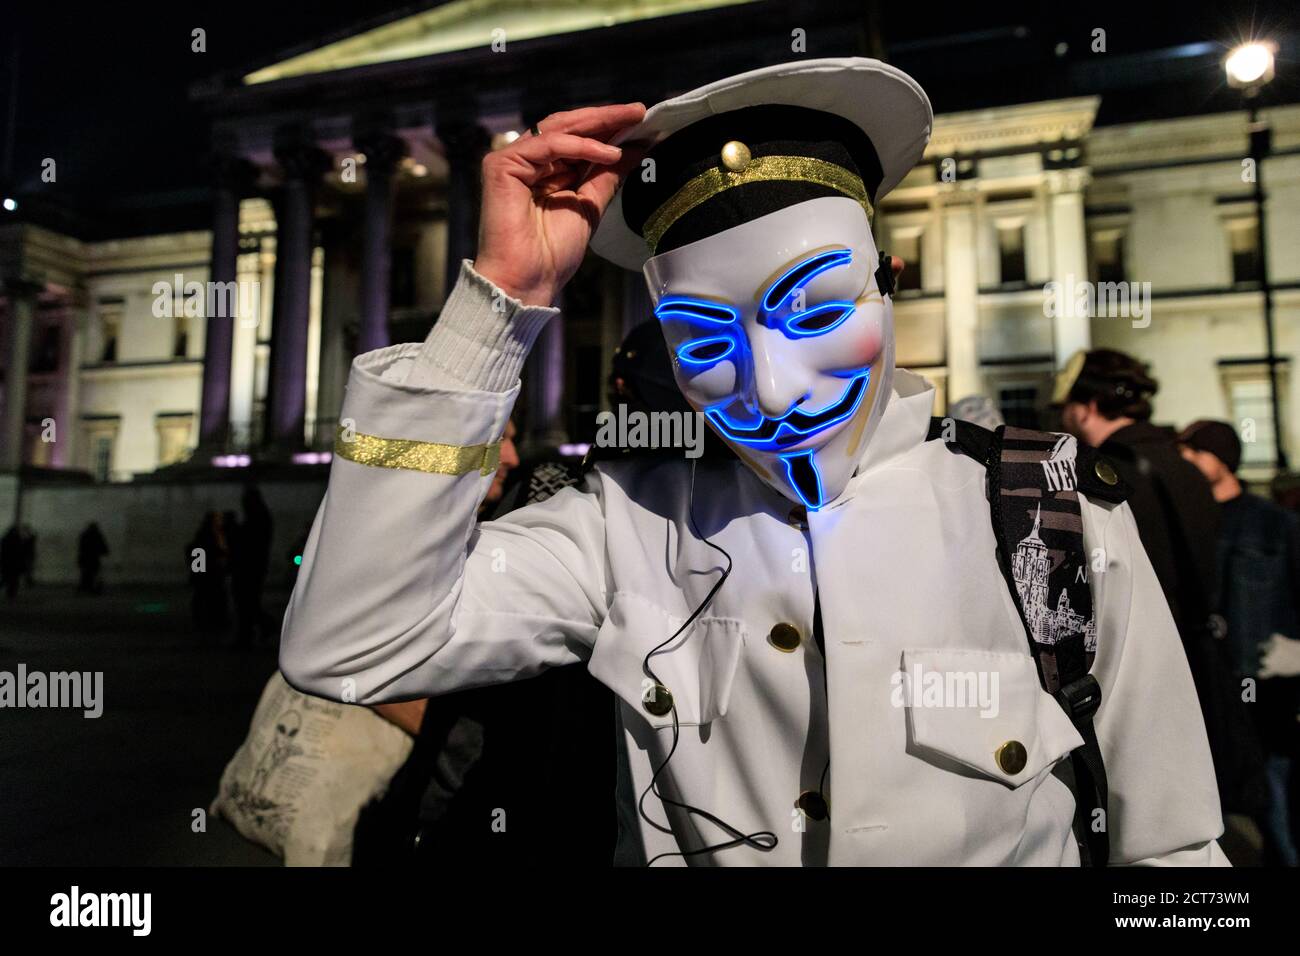 Activista en la máscara iluminada 'V o Vendetta' Guy Fawkes en Million Masks March por el grupo hacktivista Anonymous, Guy Fawkes Day, Londres, Reino Unido Foto de stock